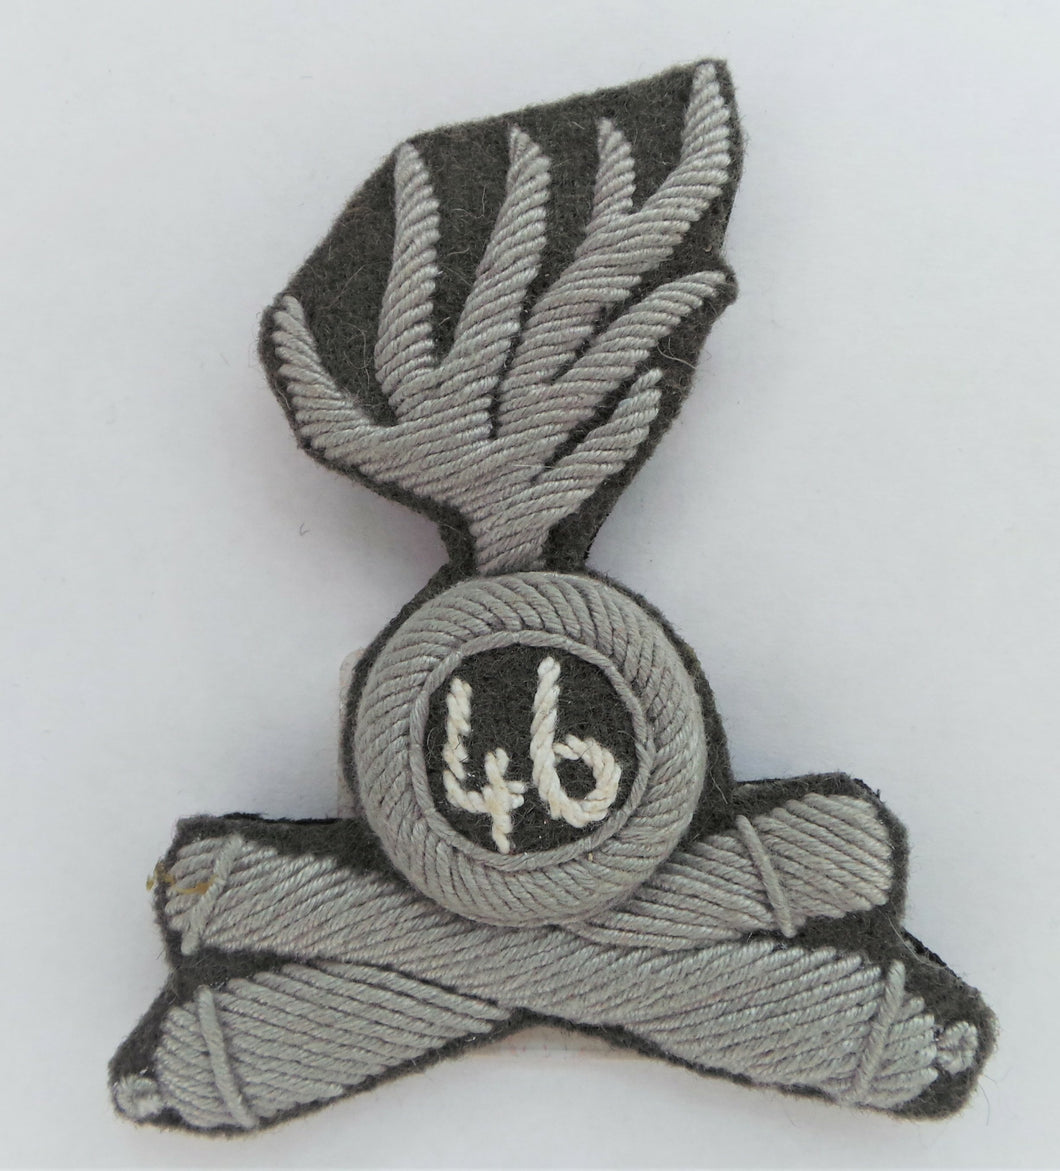 WW1 Riproduzione Ufficiale Sottufficiale e truppa Artiglieria da Campagna fregio per berretto Regio Esercito